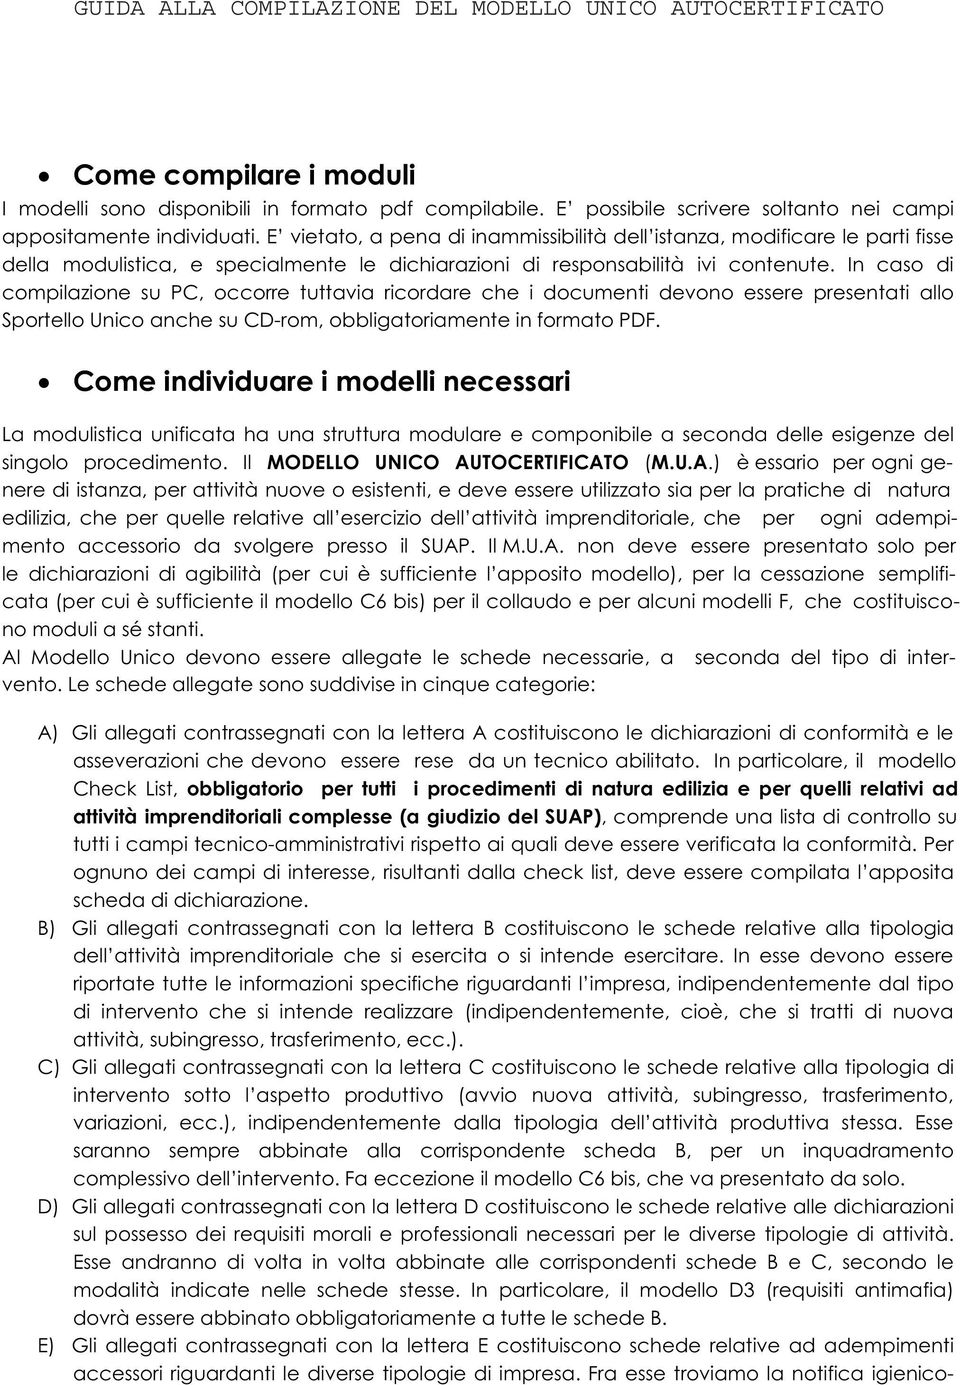 In caso di compilazione su PC, occorre tuttavia ricordare che i documenti devono essere presentati allo Sportello Unico anche su CD-rom, obbligatoriamente in formato PDF.